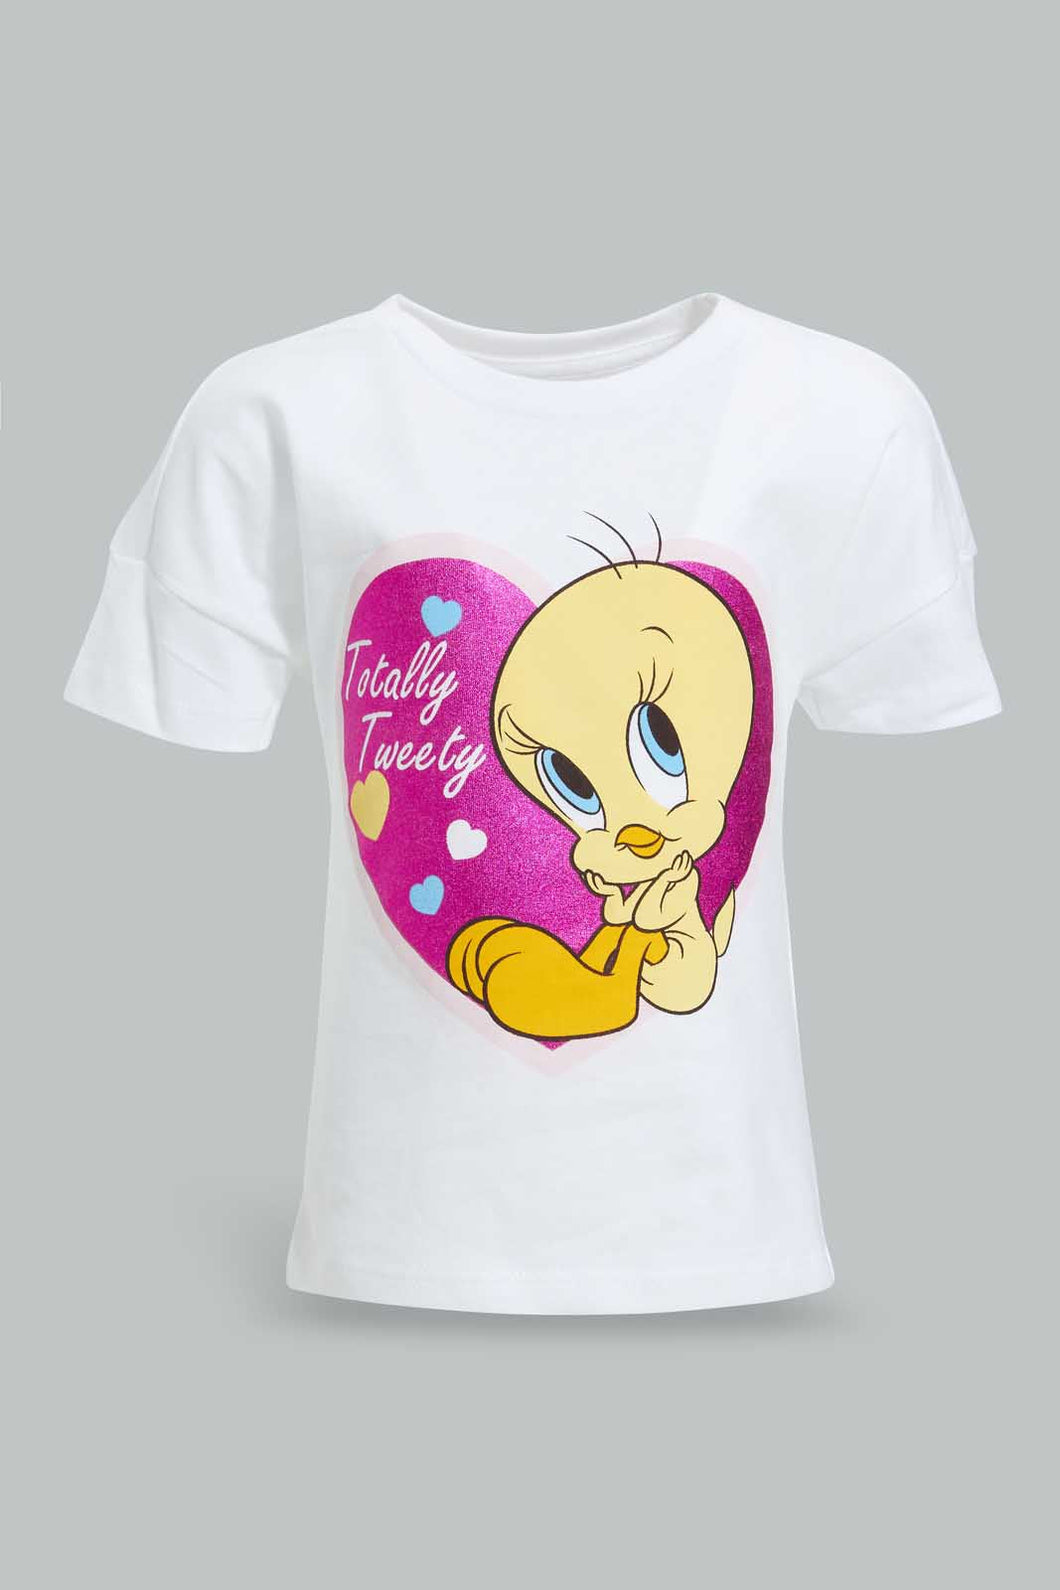 White Tweety T-Shirt For Baby Girls تيشيرت باللون الوردي بطبعة تويتي للبنات الرضع